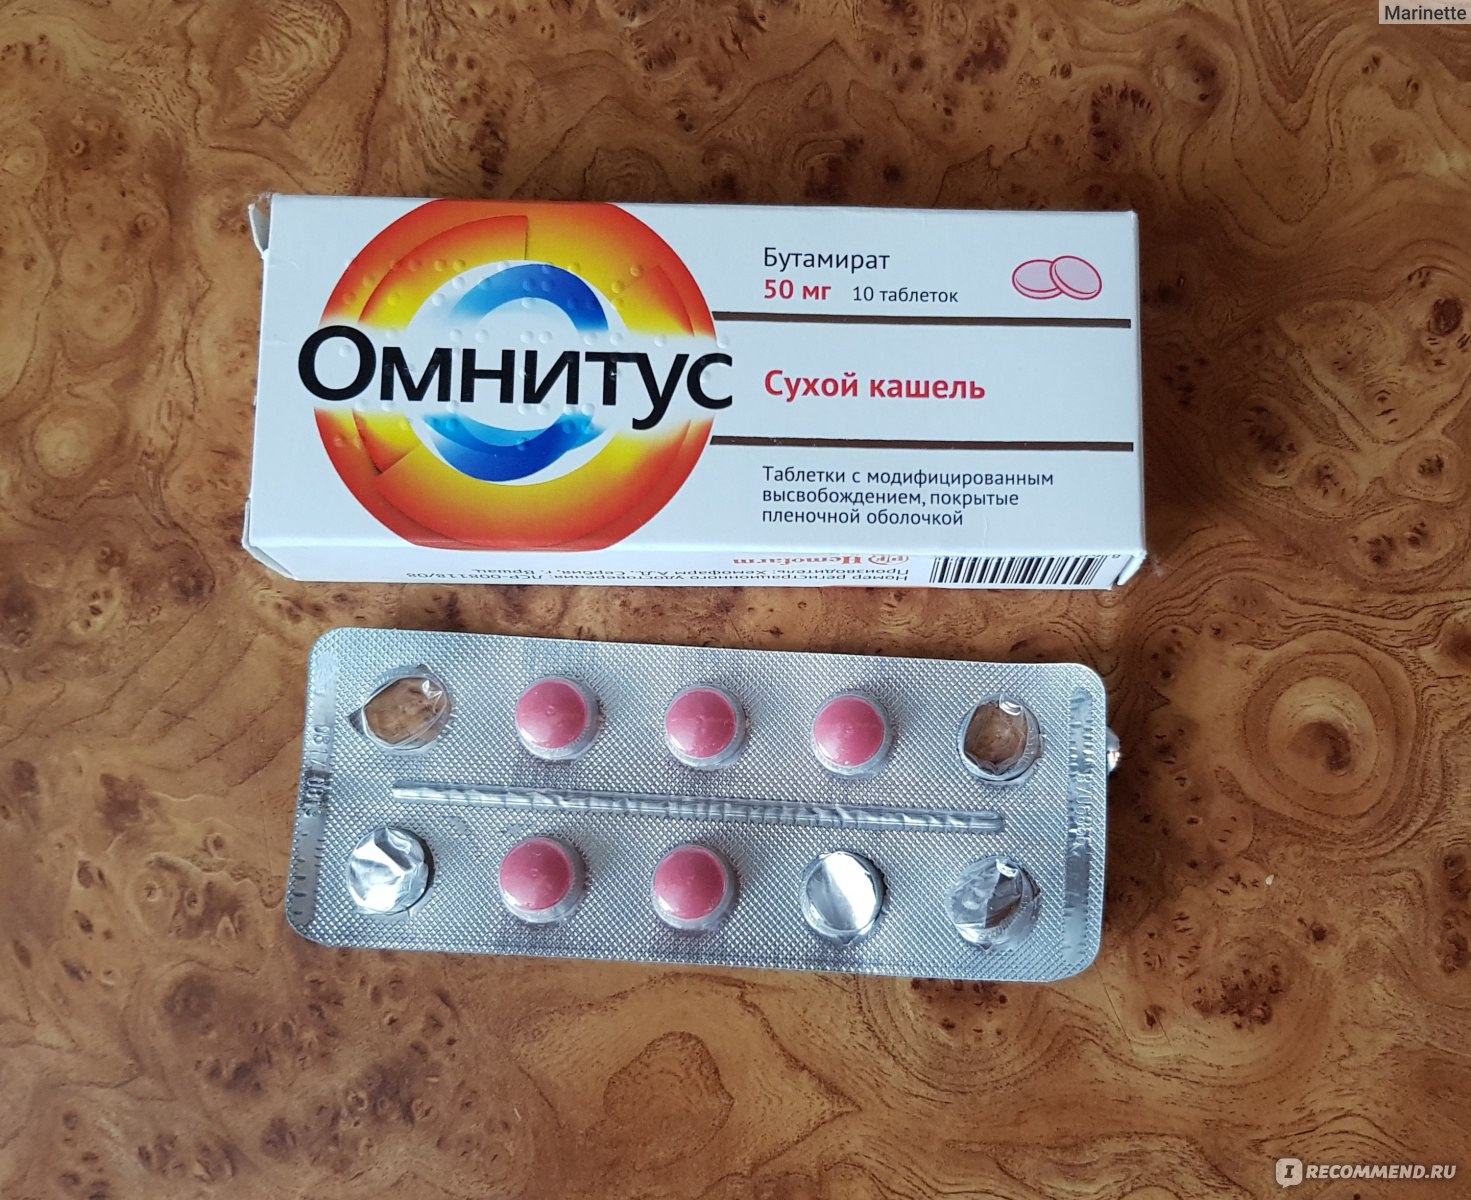 Цена Лекарств В Аптеке Омнитус И Синекод